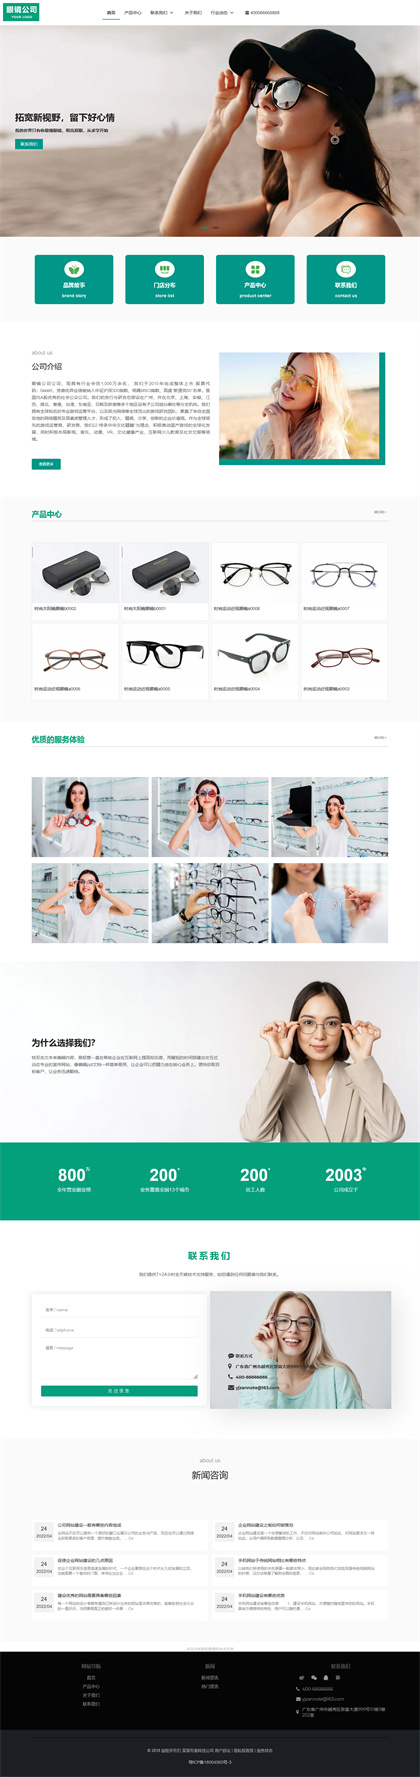 眼镜公司-太阳镜公司-近视眼镜-网站模板网站模板图片